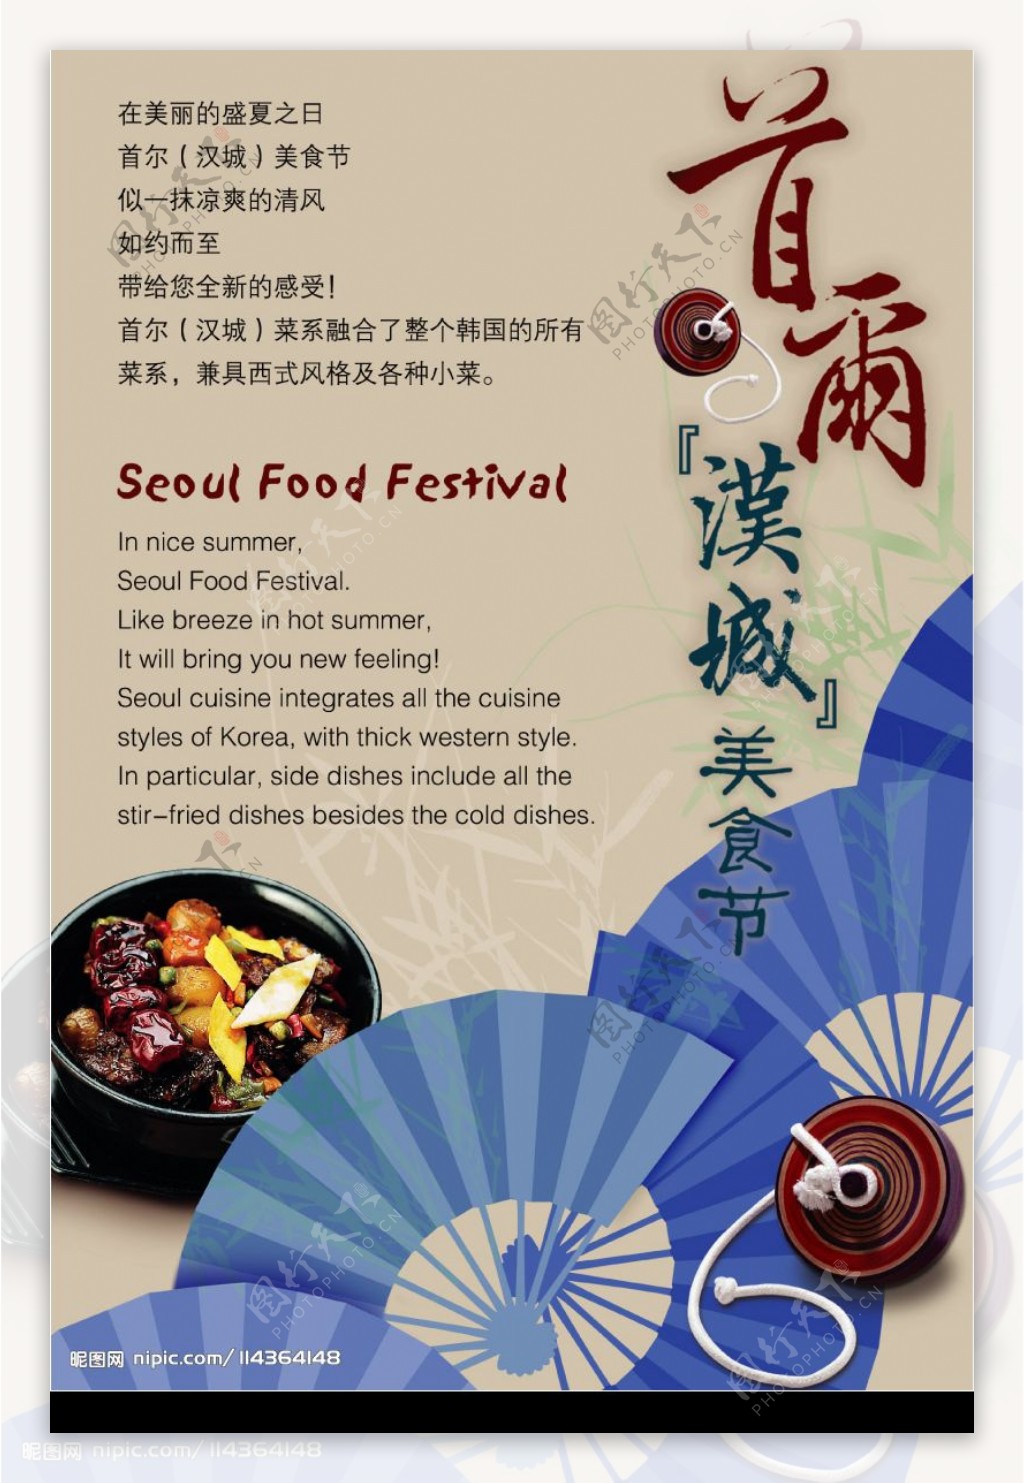 高档酒店韩式美食节商业广告模板图片